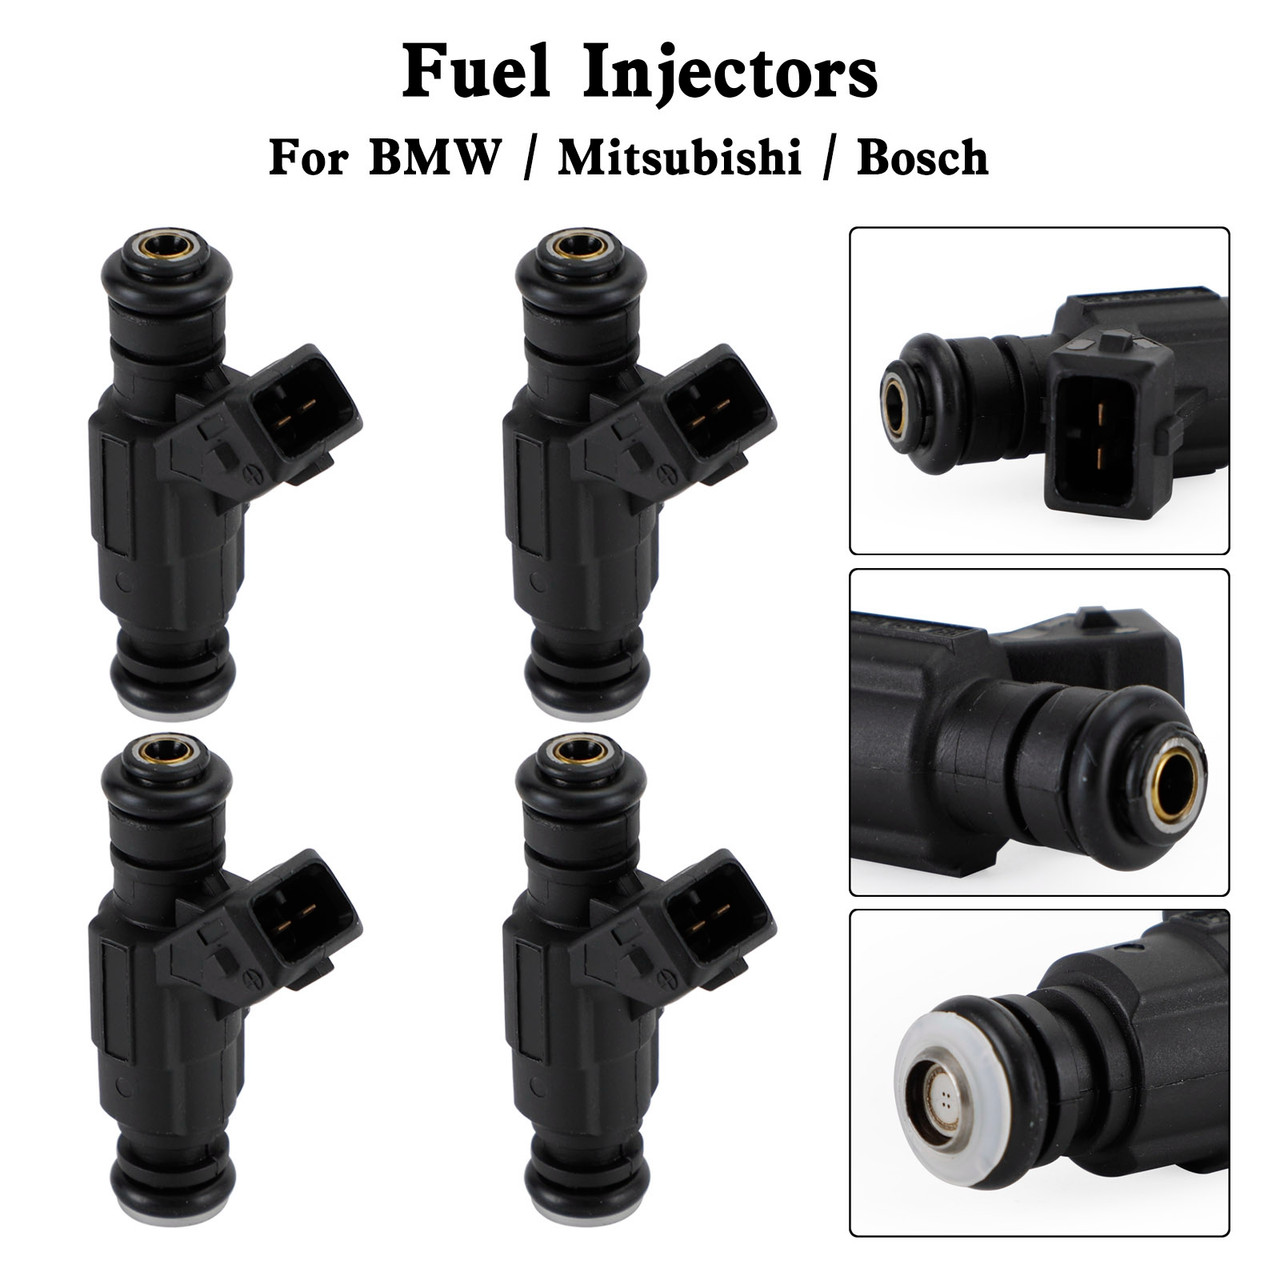 4PCS Fuel Injectors 0280155788 For BMW Motorcycles R 1100 1150 1200 Mitsubishi